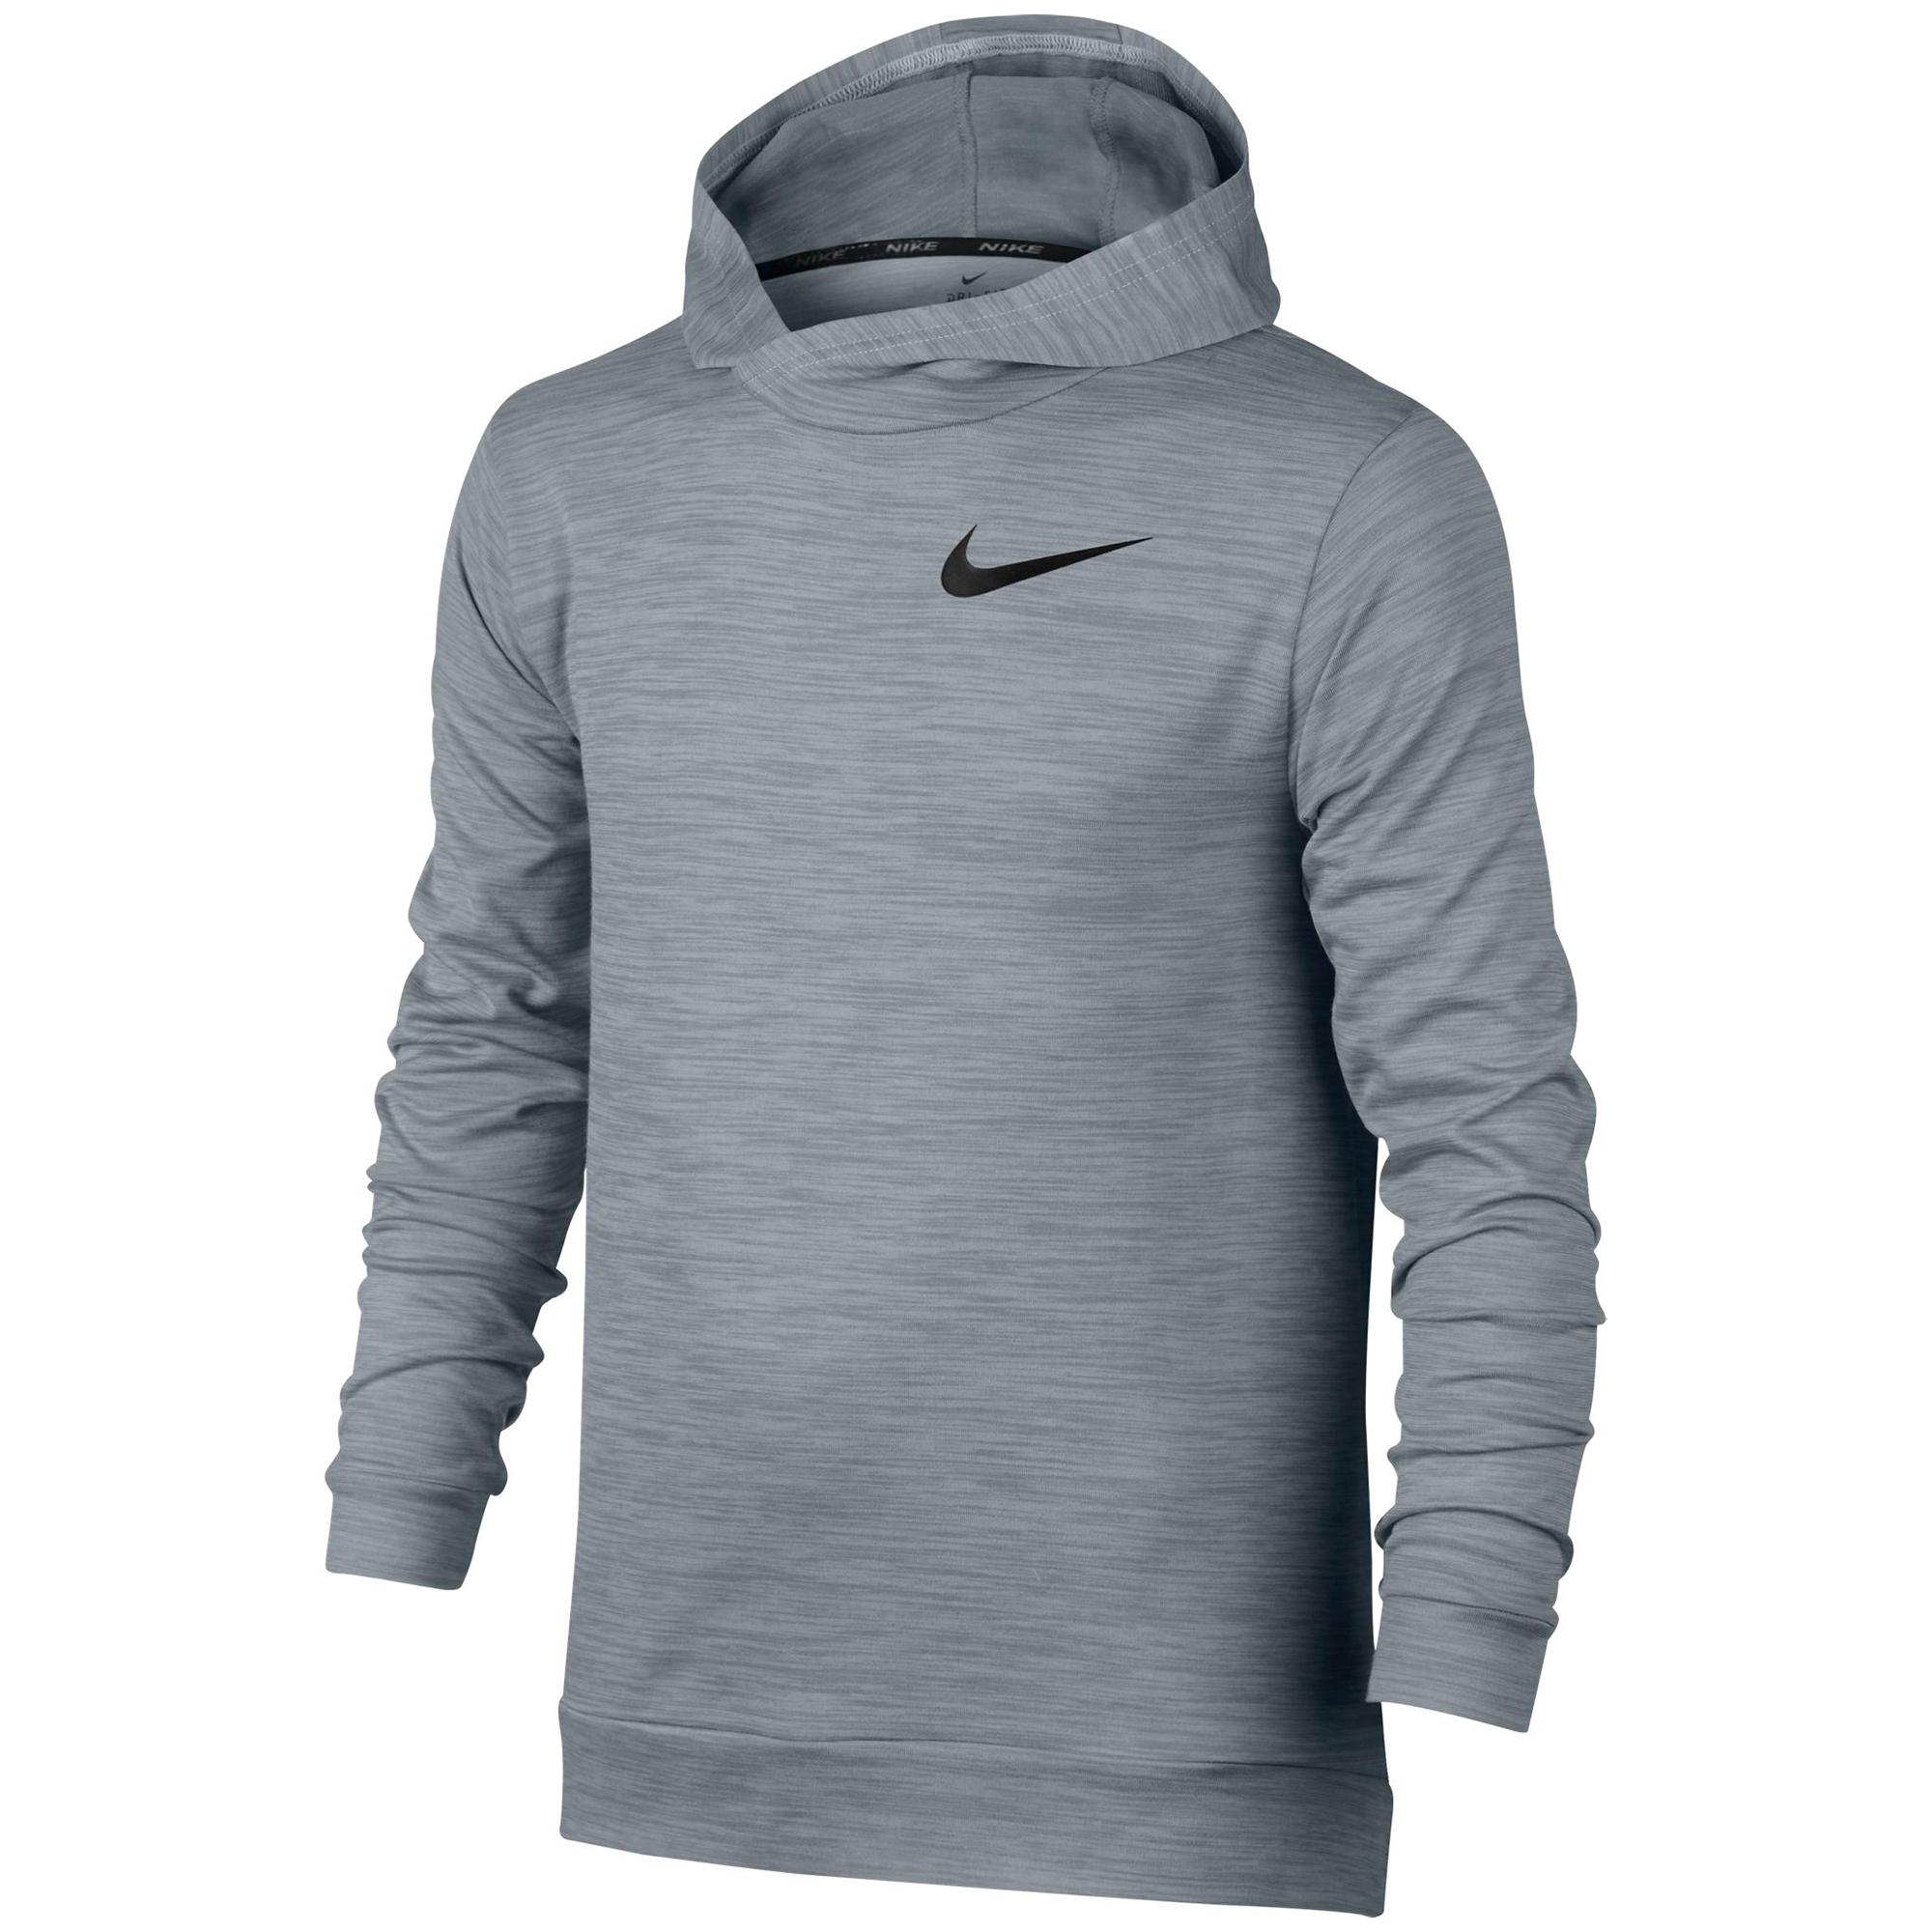 Nike Boys Dry Training Hoodie - Pure Platinum/Stealth Grey - Tennisnuts.com